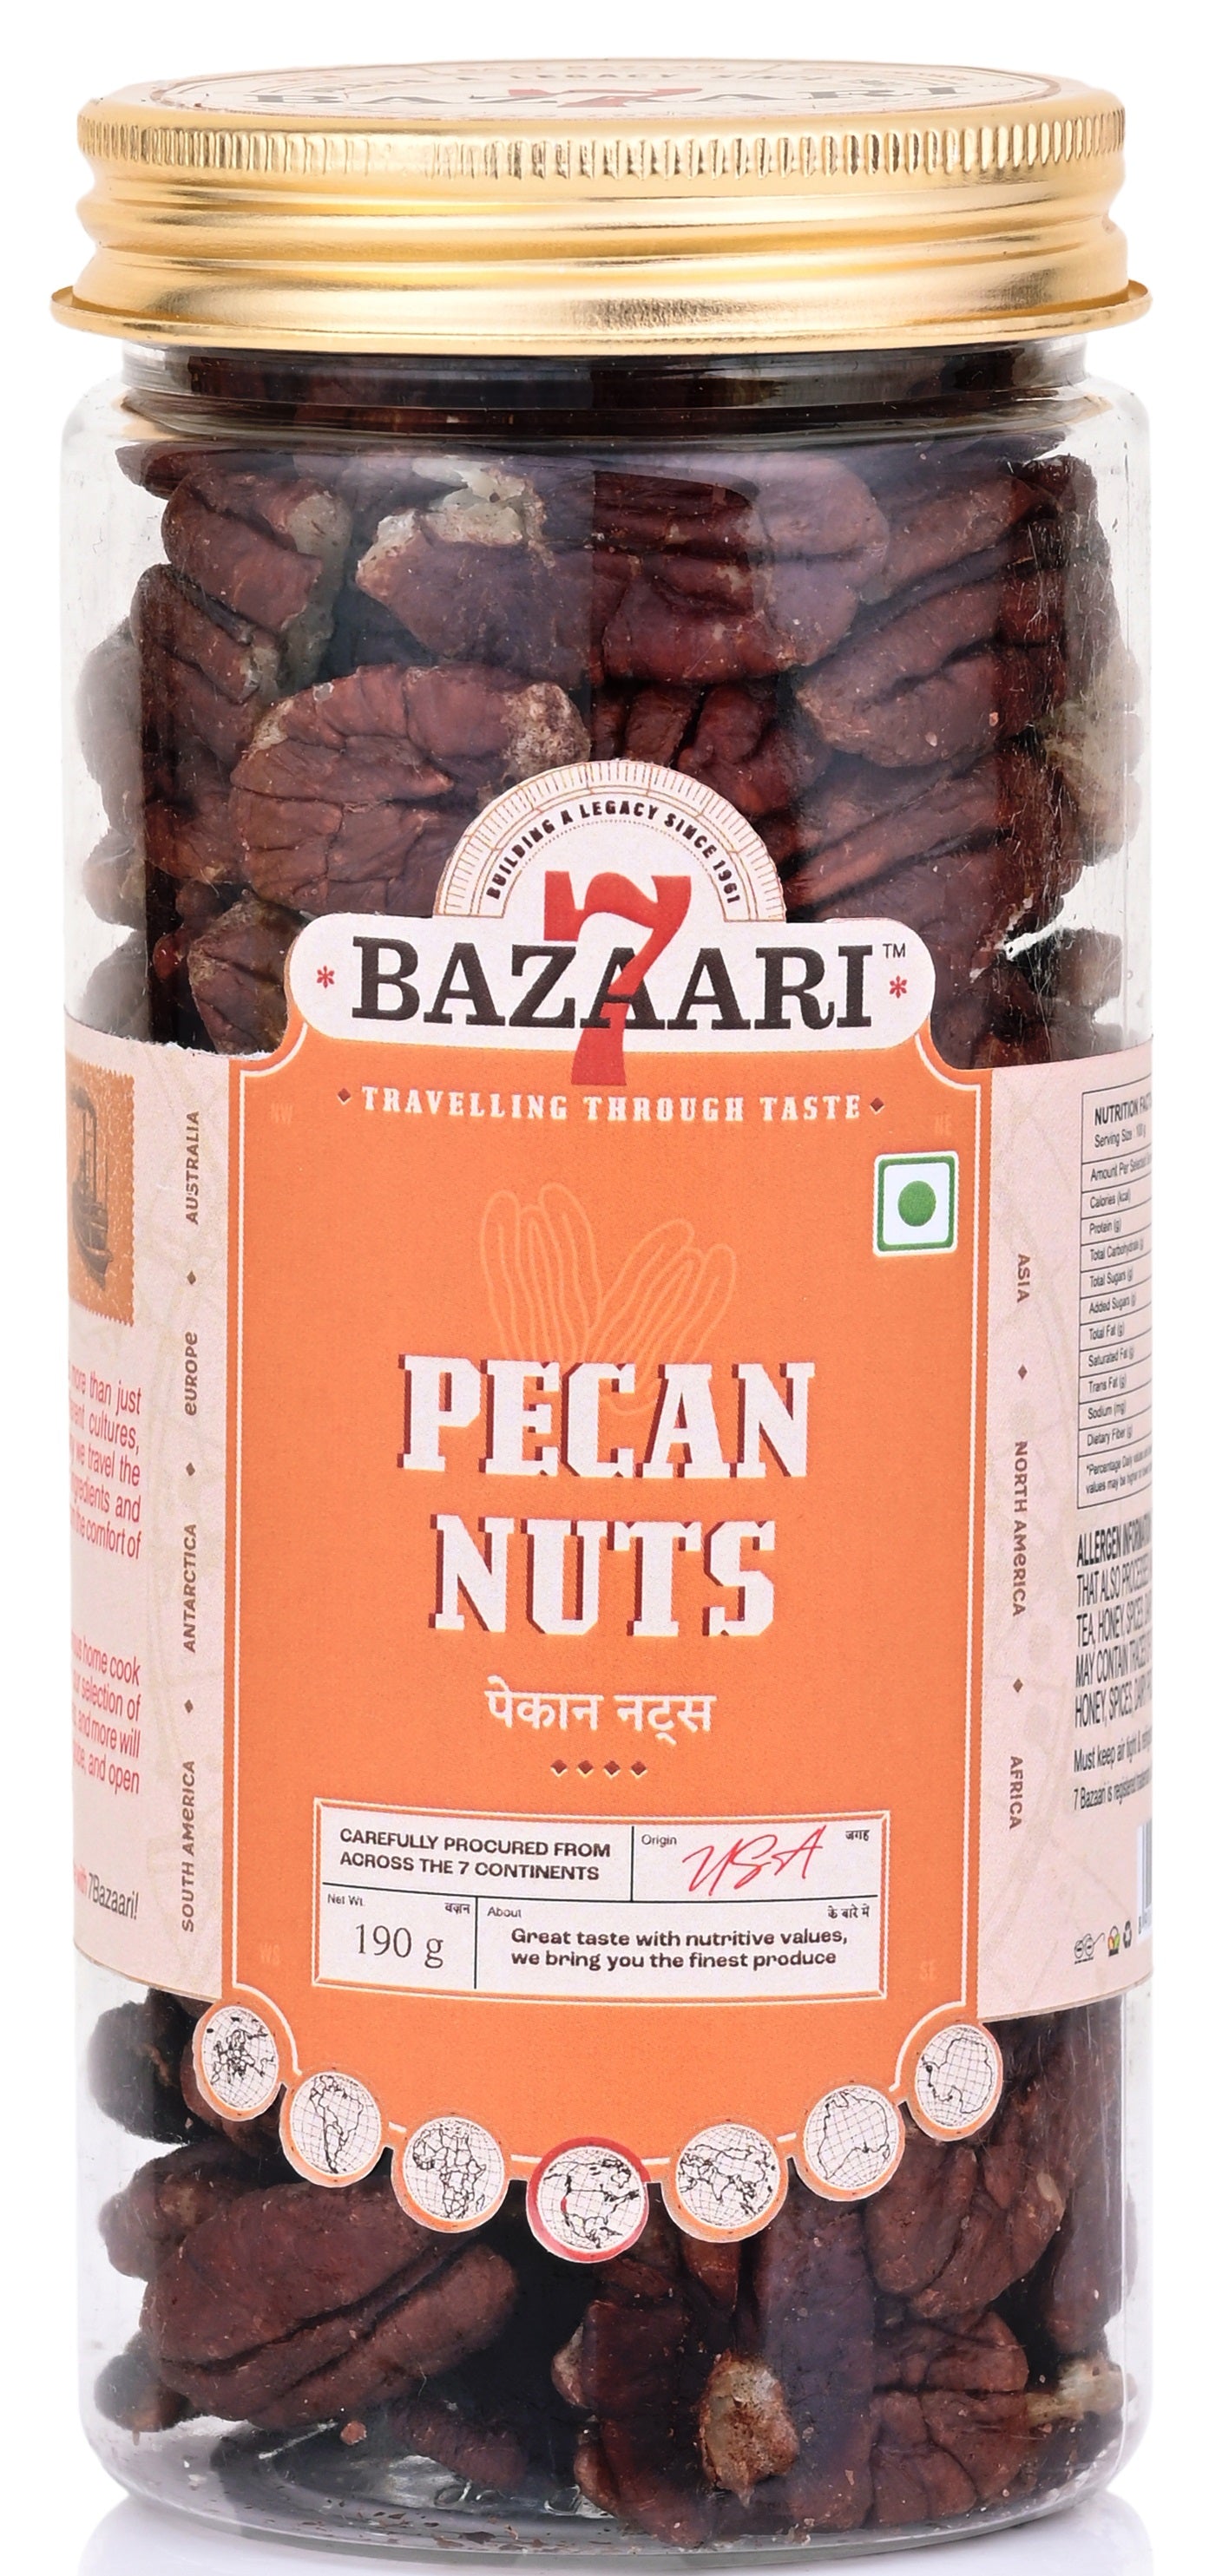 American Pecan Nuts 190g